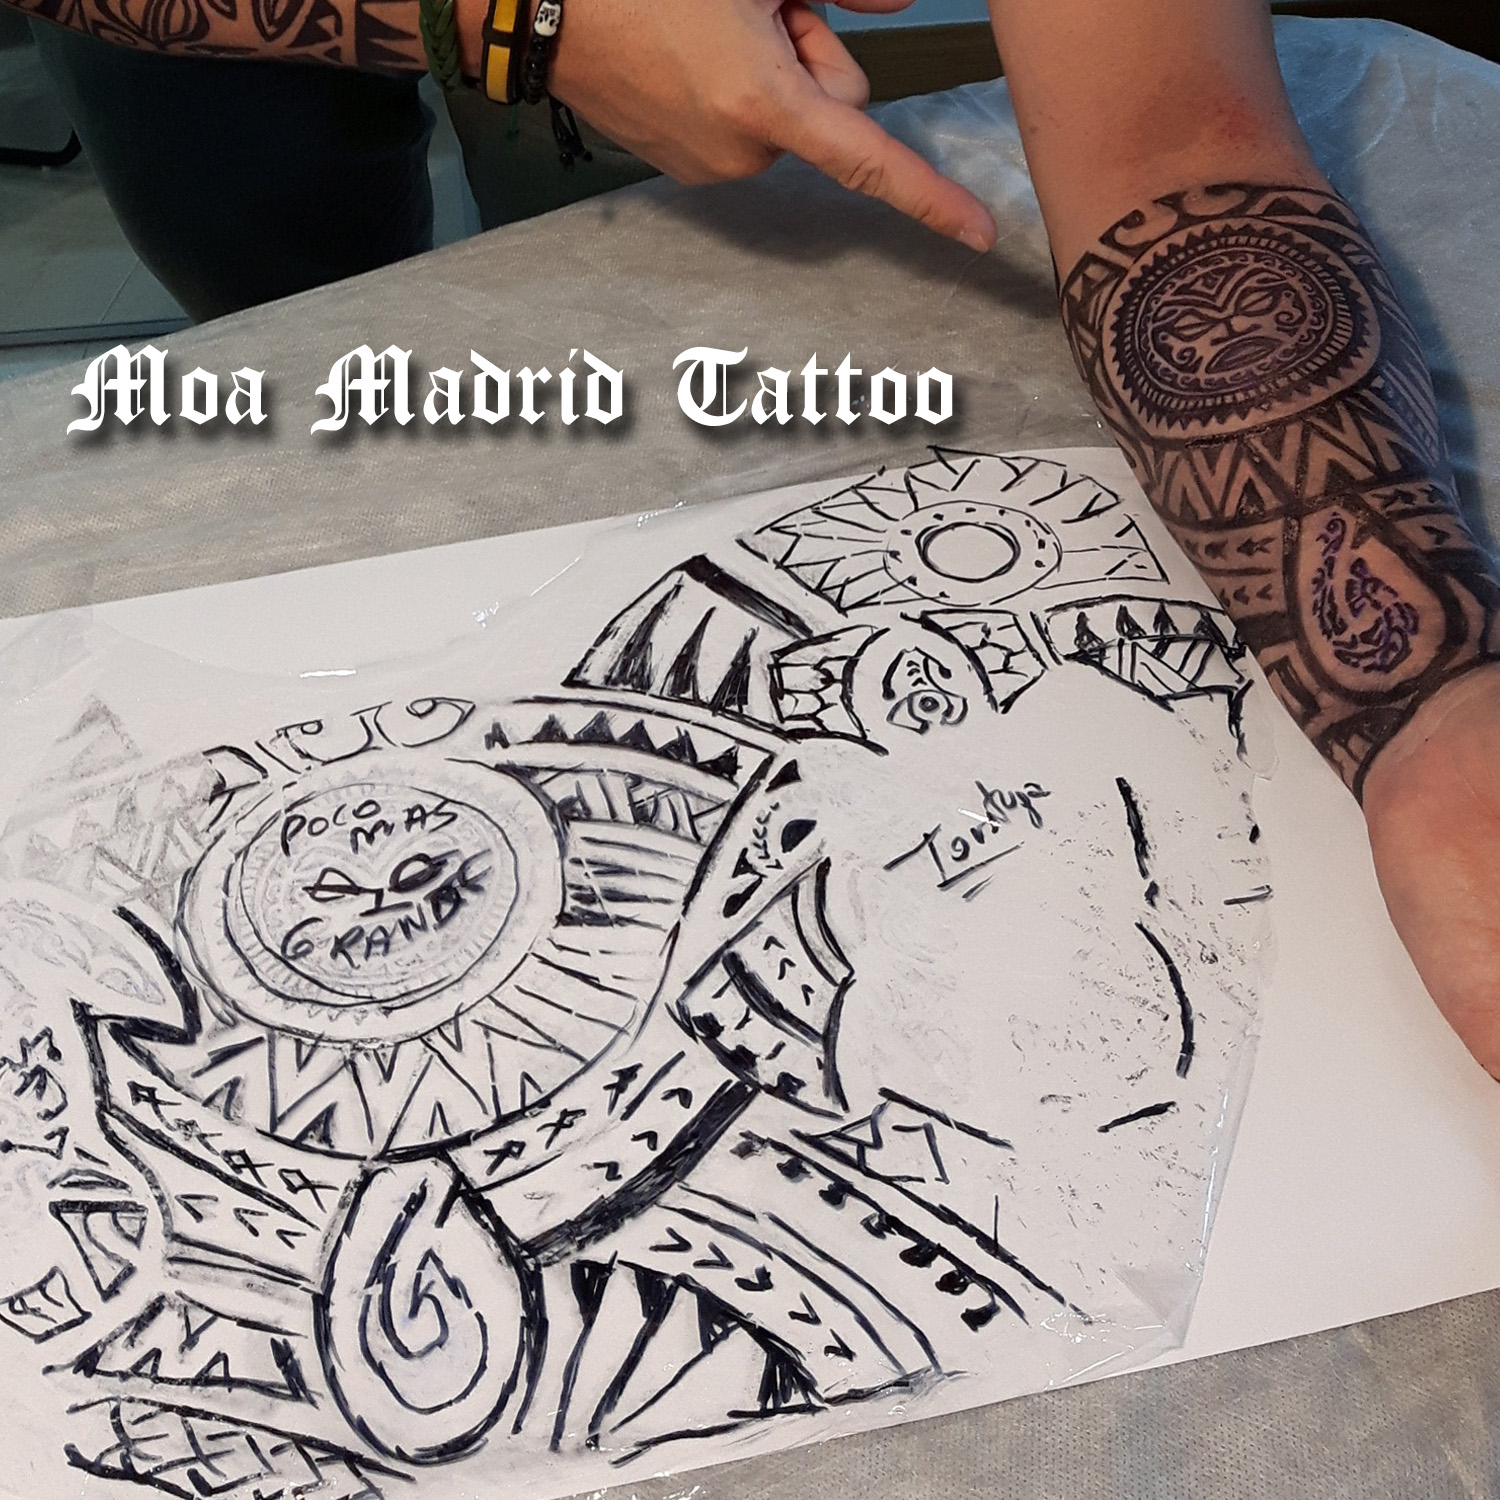 Tatuaje maorí en antebrazo con sol y tortuga